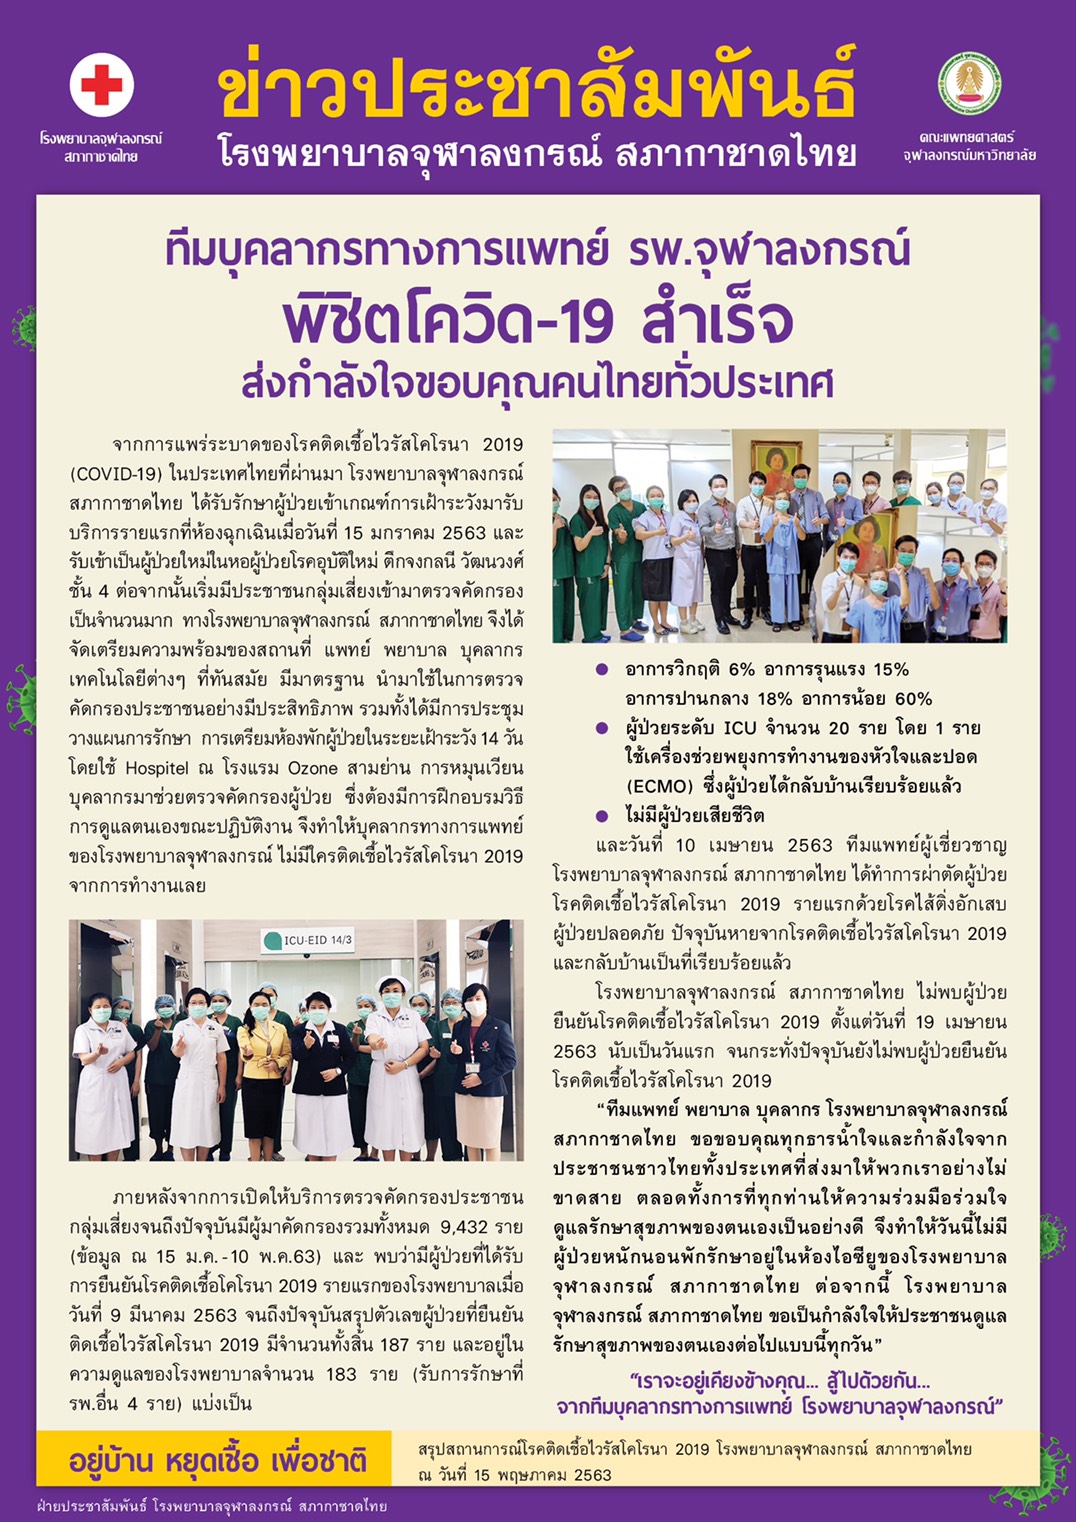 ทีมบุคลากรทางการแพทย์ รพ.จุฬาลงกรณ์ พิชิตโควิด-19 สำเร็จ ส่งกำลังใจขอบคุณคนไทยทั่วประเทศ